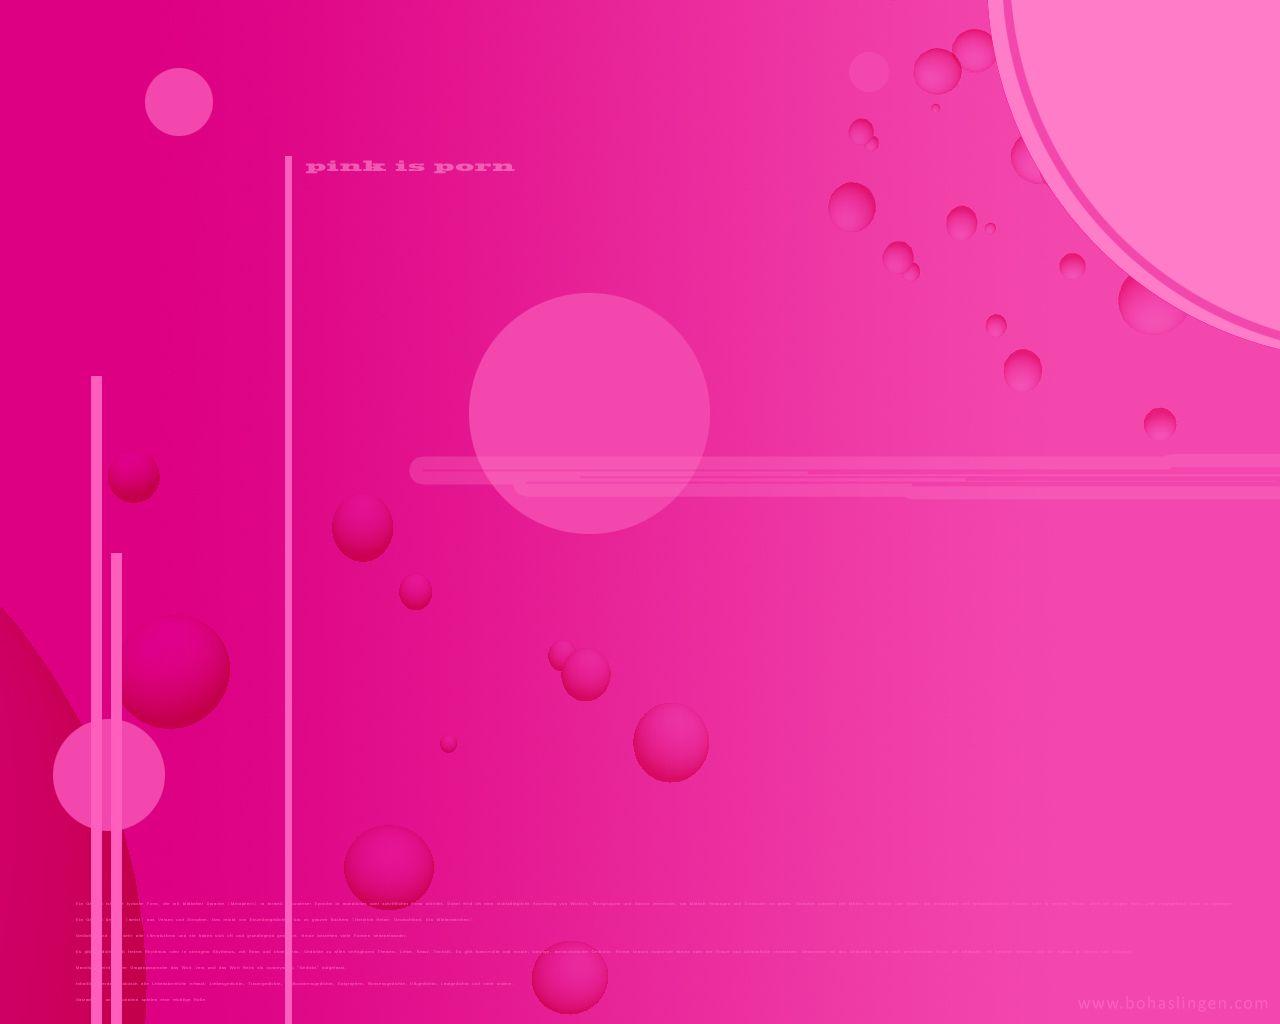 Hình nền màu hồng: Màu hồng với sắc tím nhẹ nhàng hòa quyện tạo ra một hình nền màu hồng tươi sáng, thơ mộng. Trải nghiệm không gian vui tươi, hi vọng, lãng mạn và ngọt ngào hơn với hình nền màu hồng này. Hãy thưởng thức những kiểu thiết kế đơn giản, nhưng đầy ấn tượng và cảm xúc.